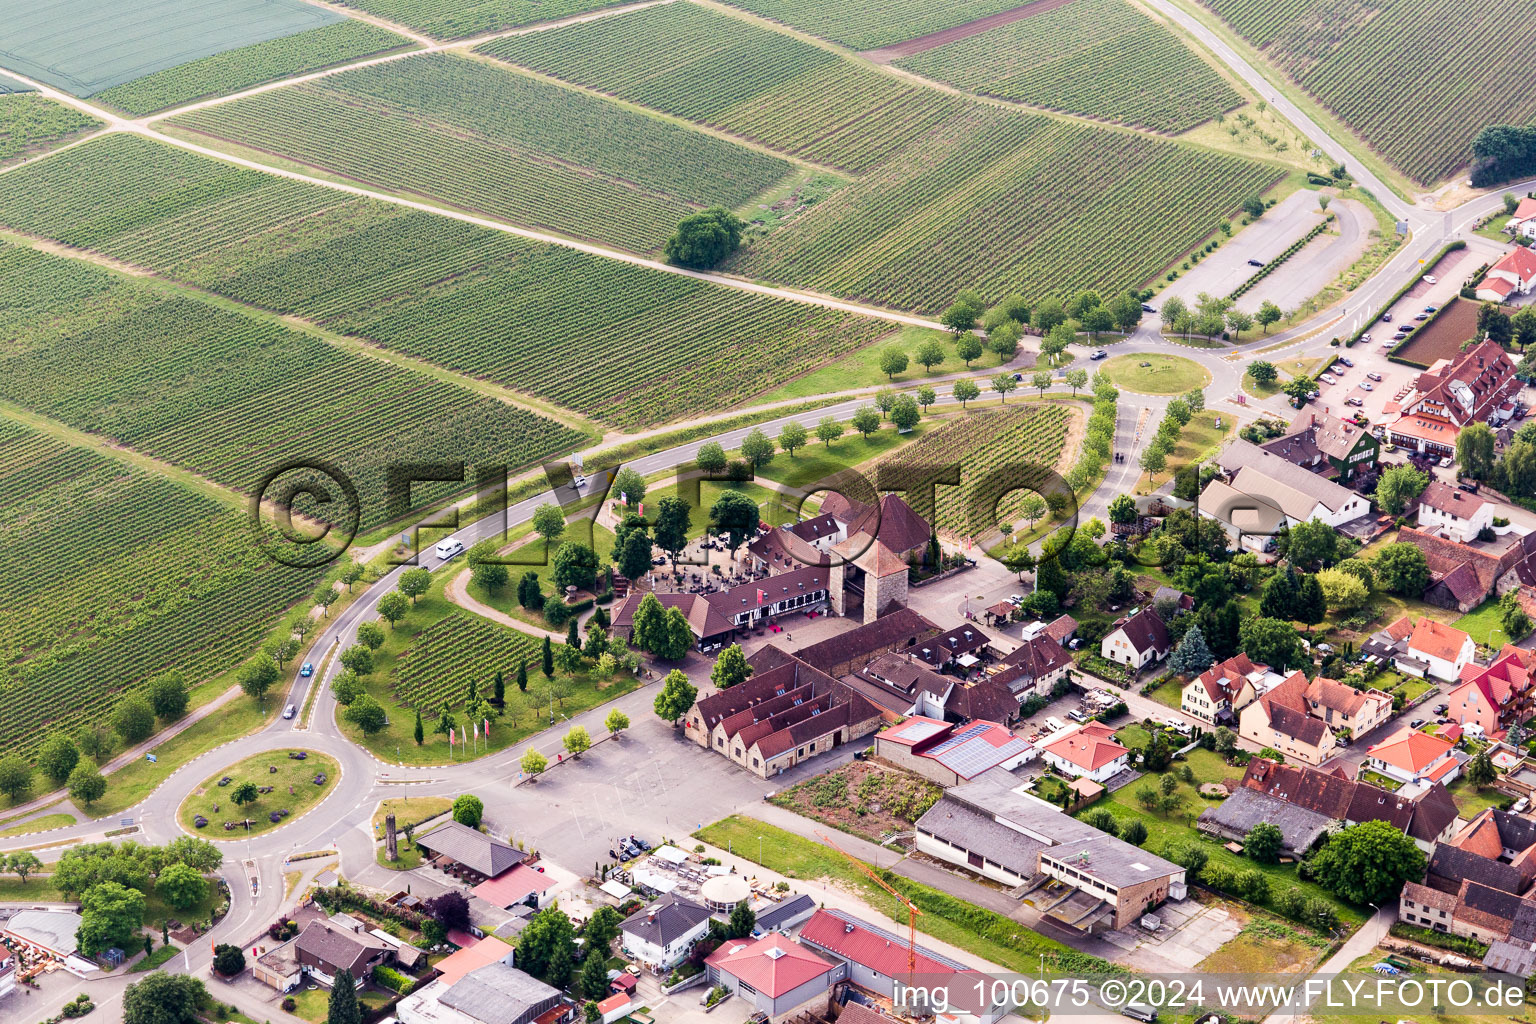 District Schweigen in Schweigen-Rechtenbach in the state Rhineland-Palatinate, Germany seen from above